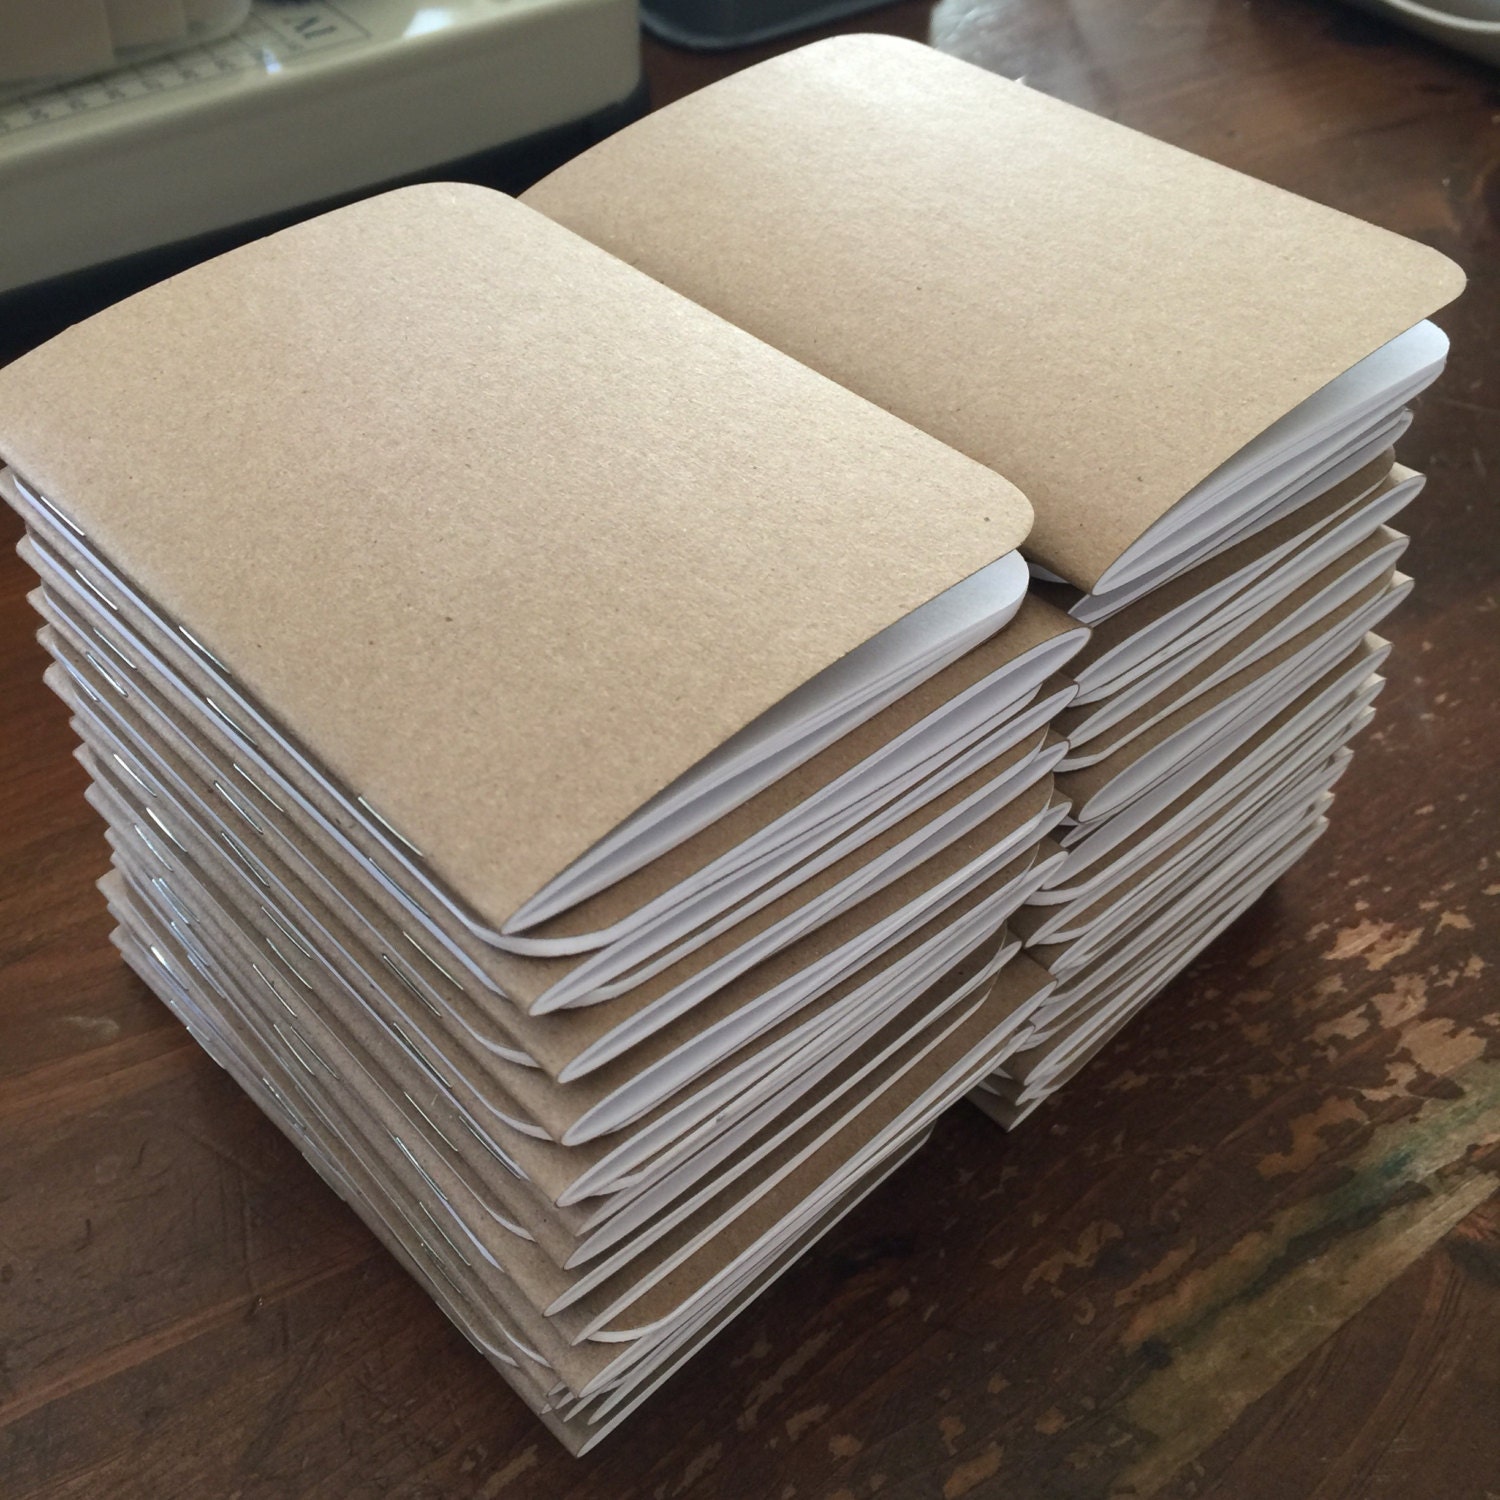 notebooks bulk